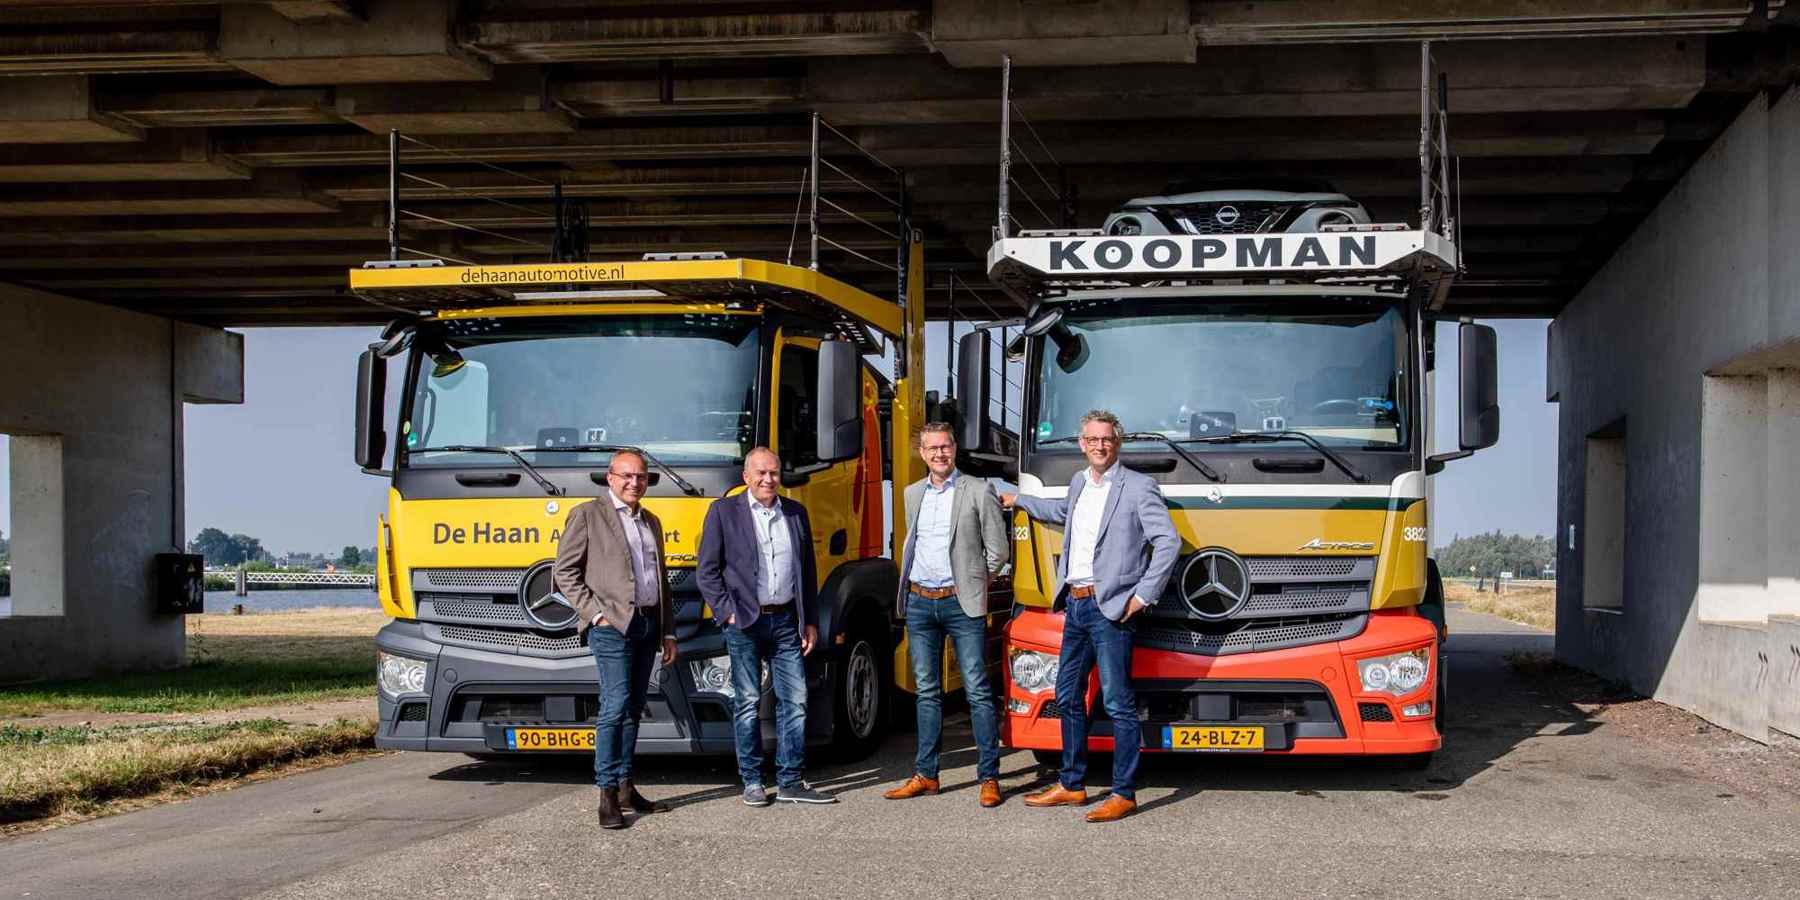 Koopman takes over De Haan Autotransport